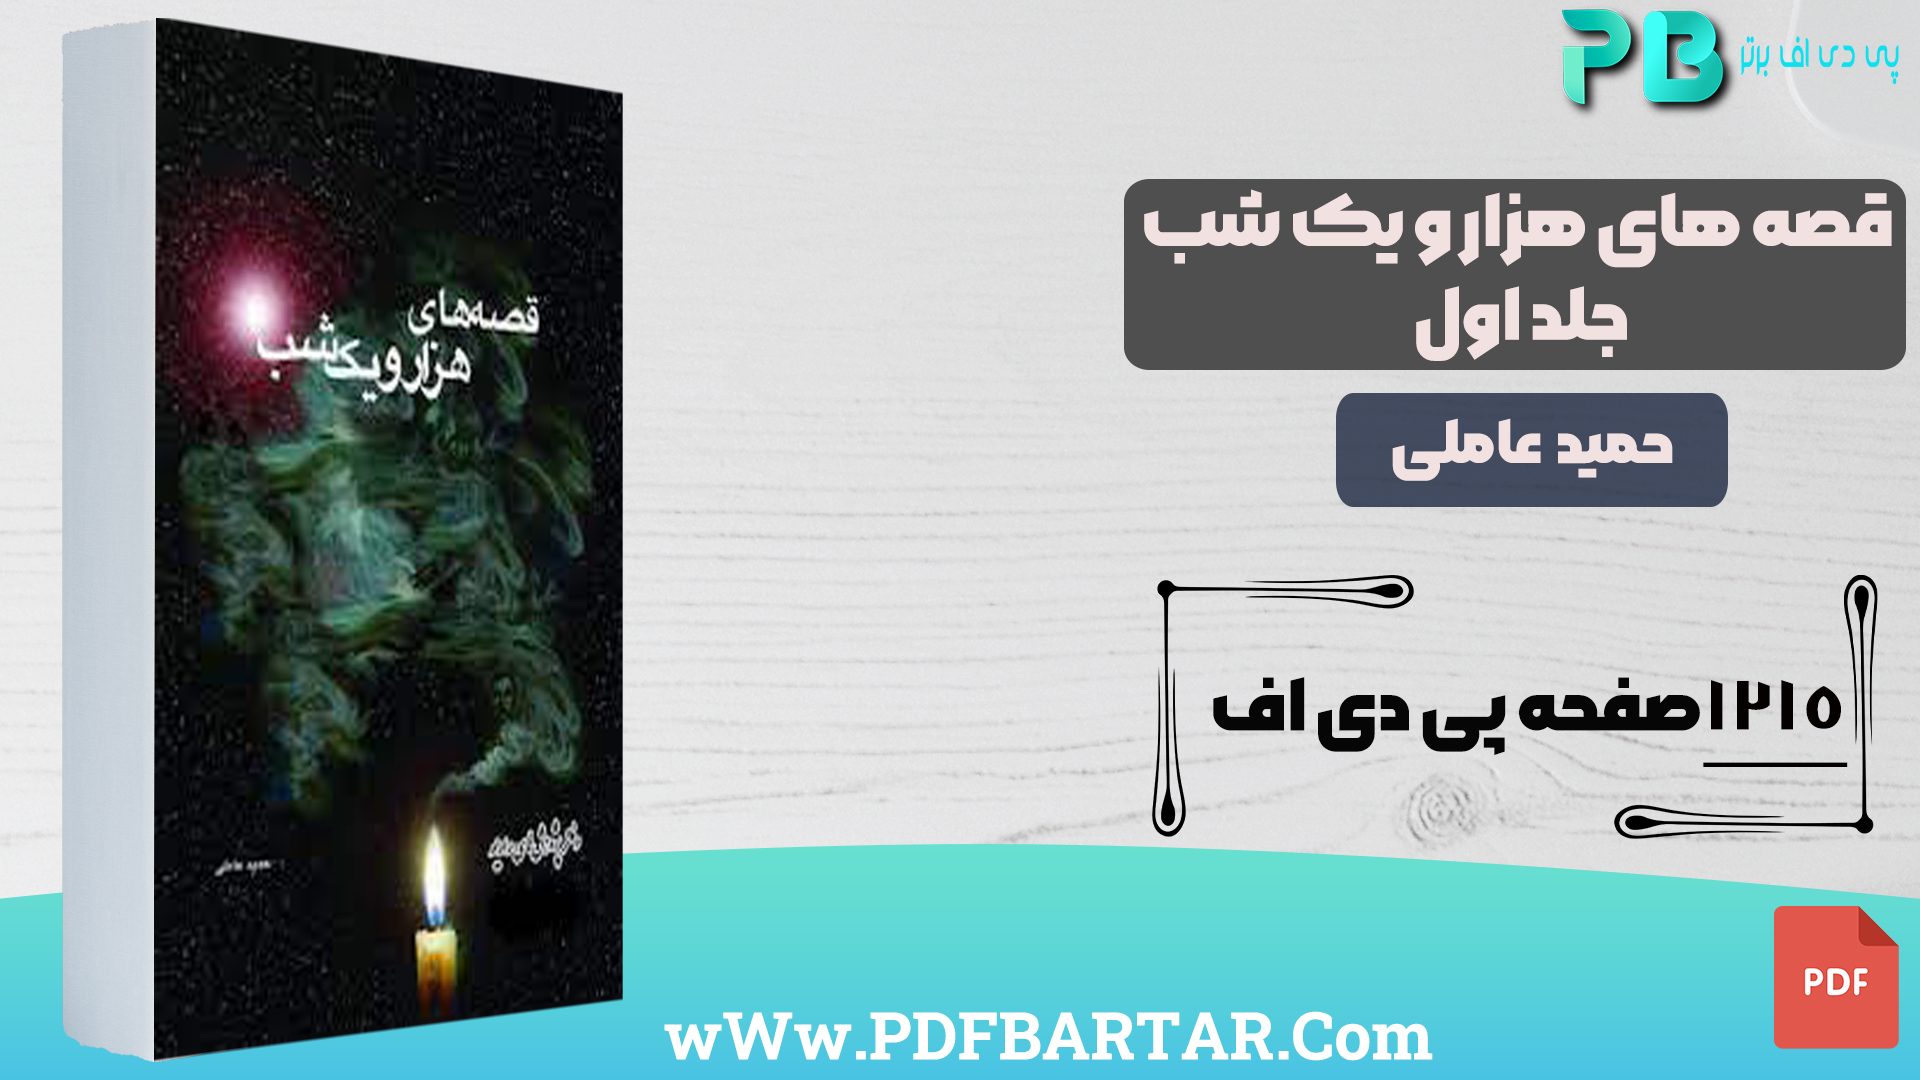 دانلود پی دی اف کتاب قصه های هزار و یک شب حمید عاملی جلد اول PDF- پی دی اف برتر